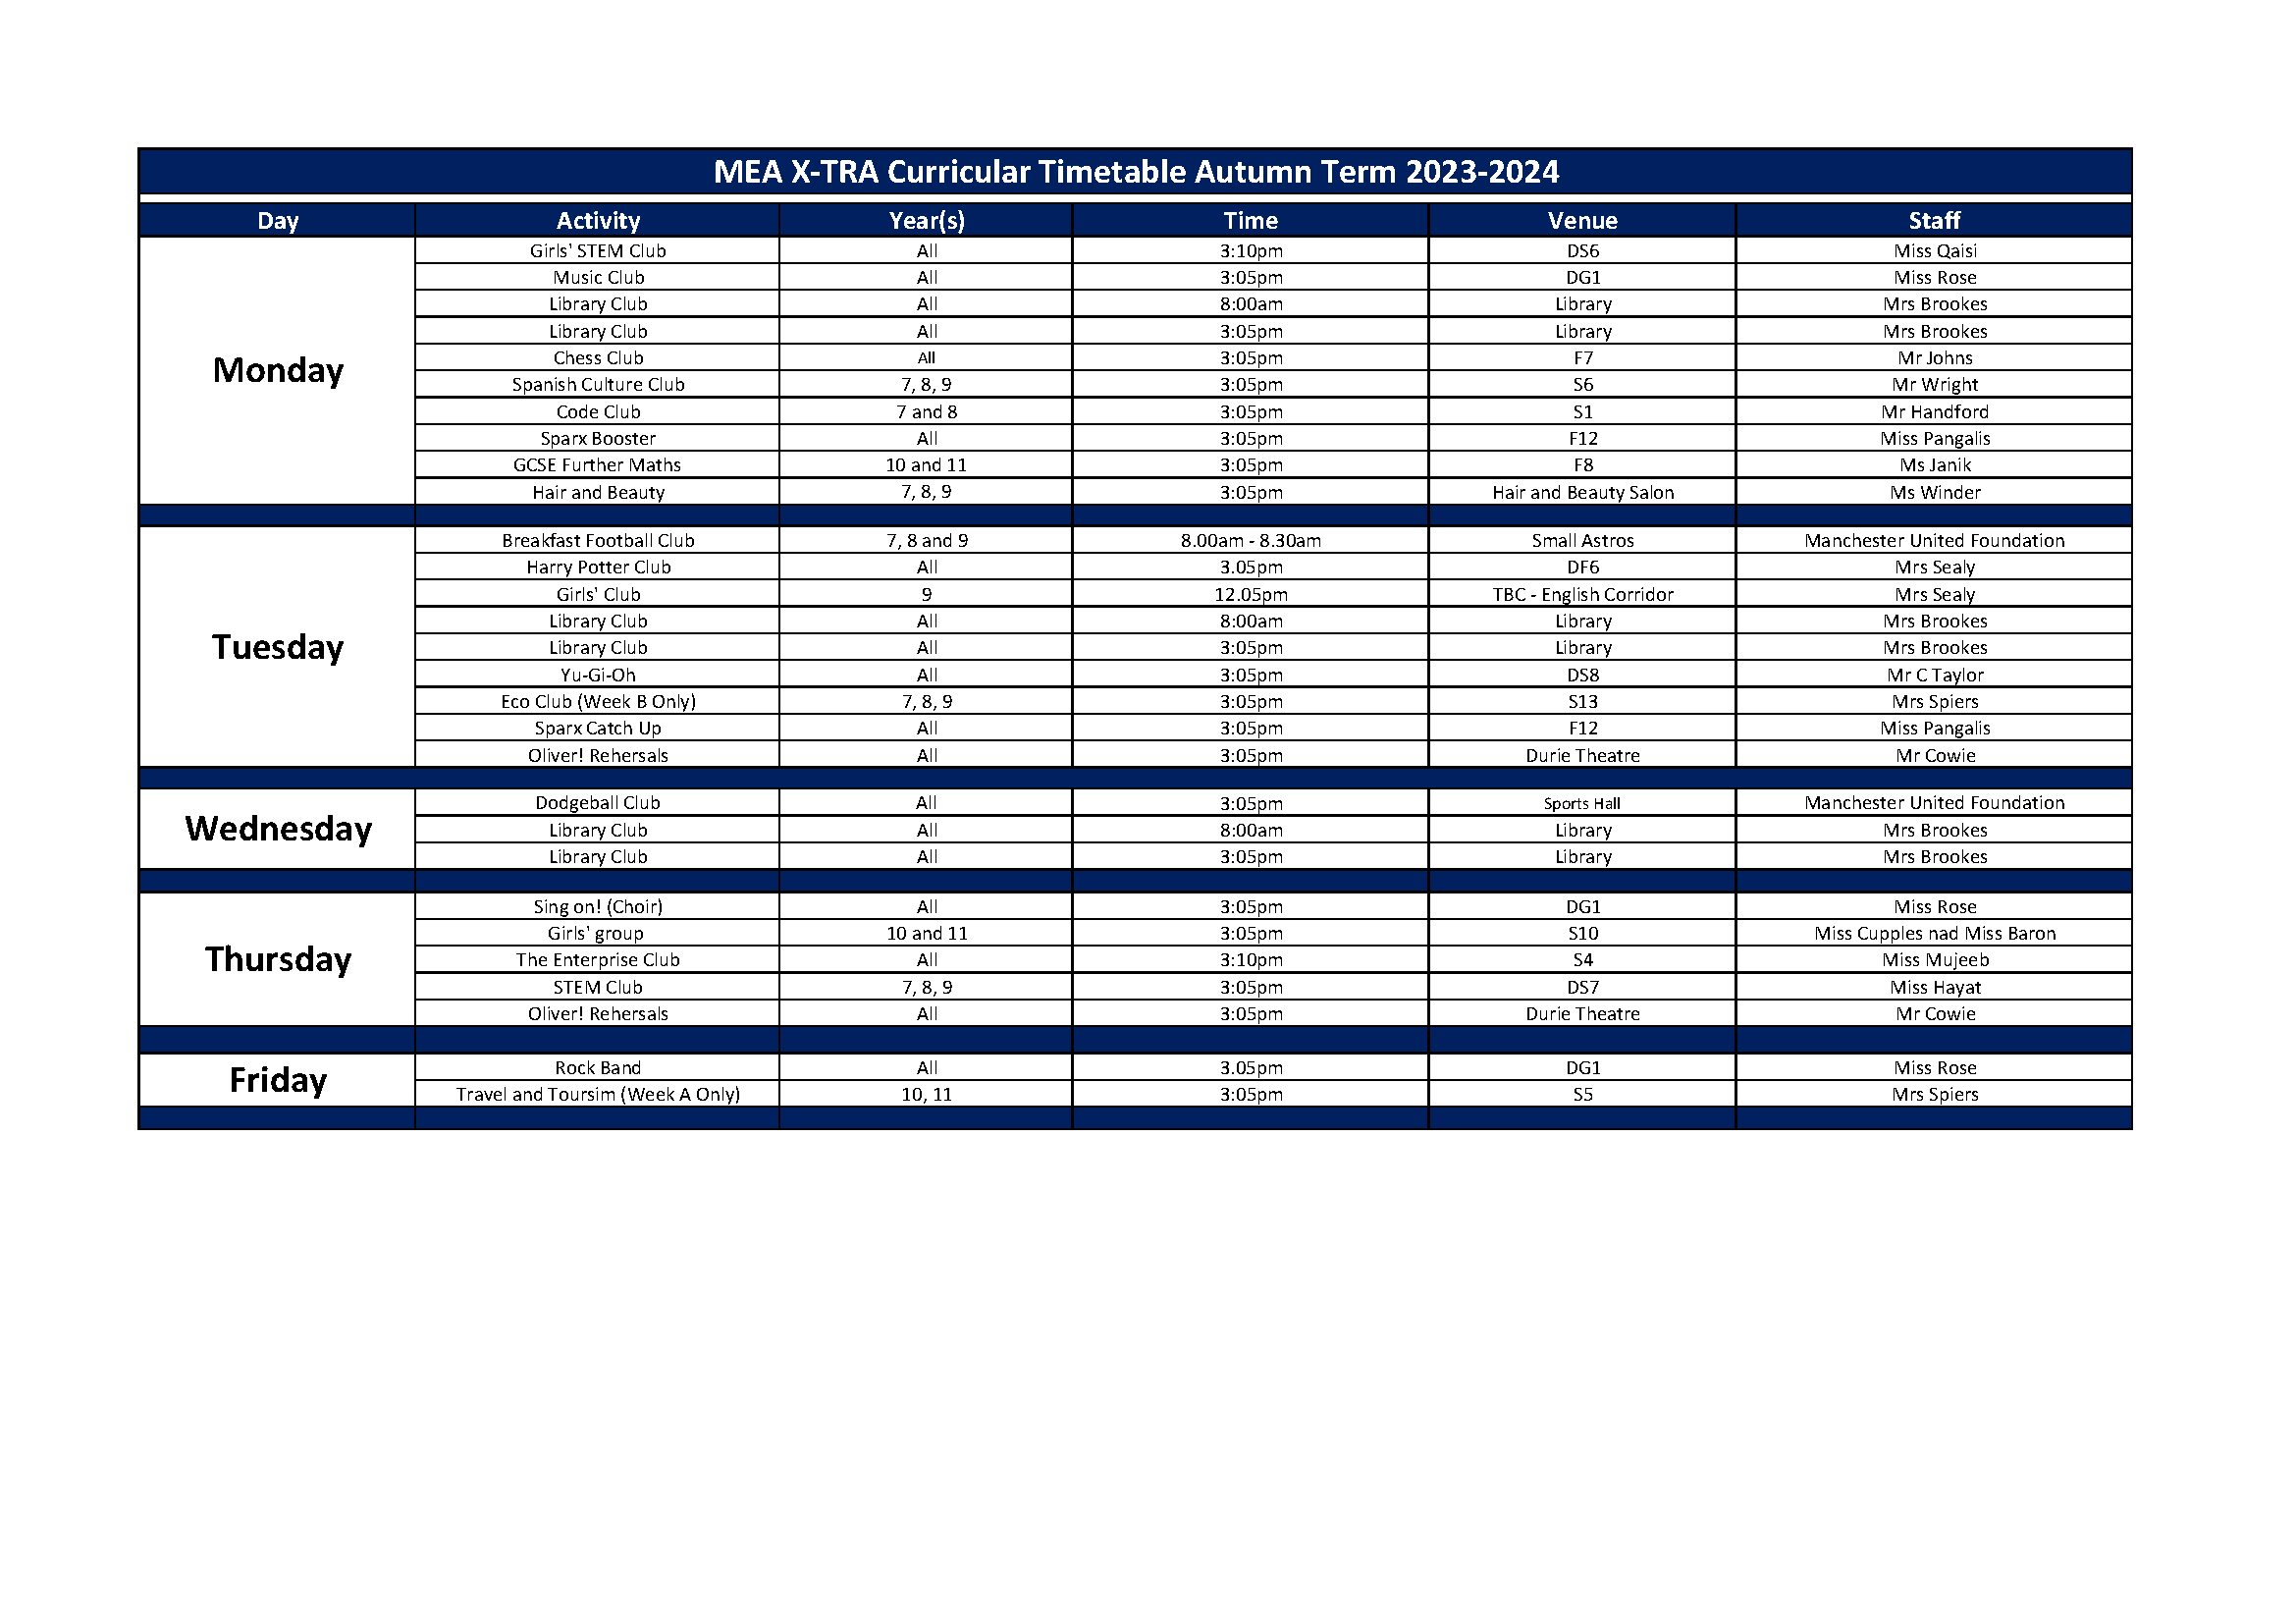 MEA Xtra Autumn Timetable 2023 24